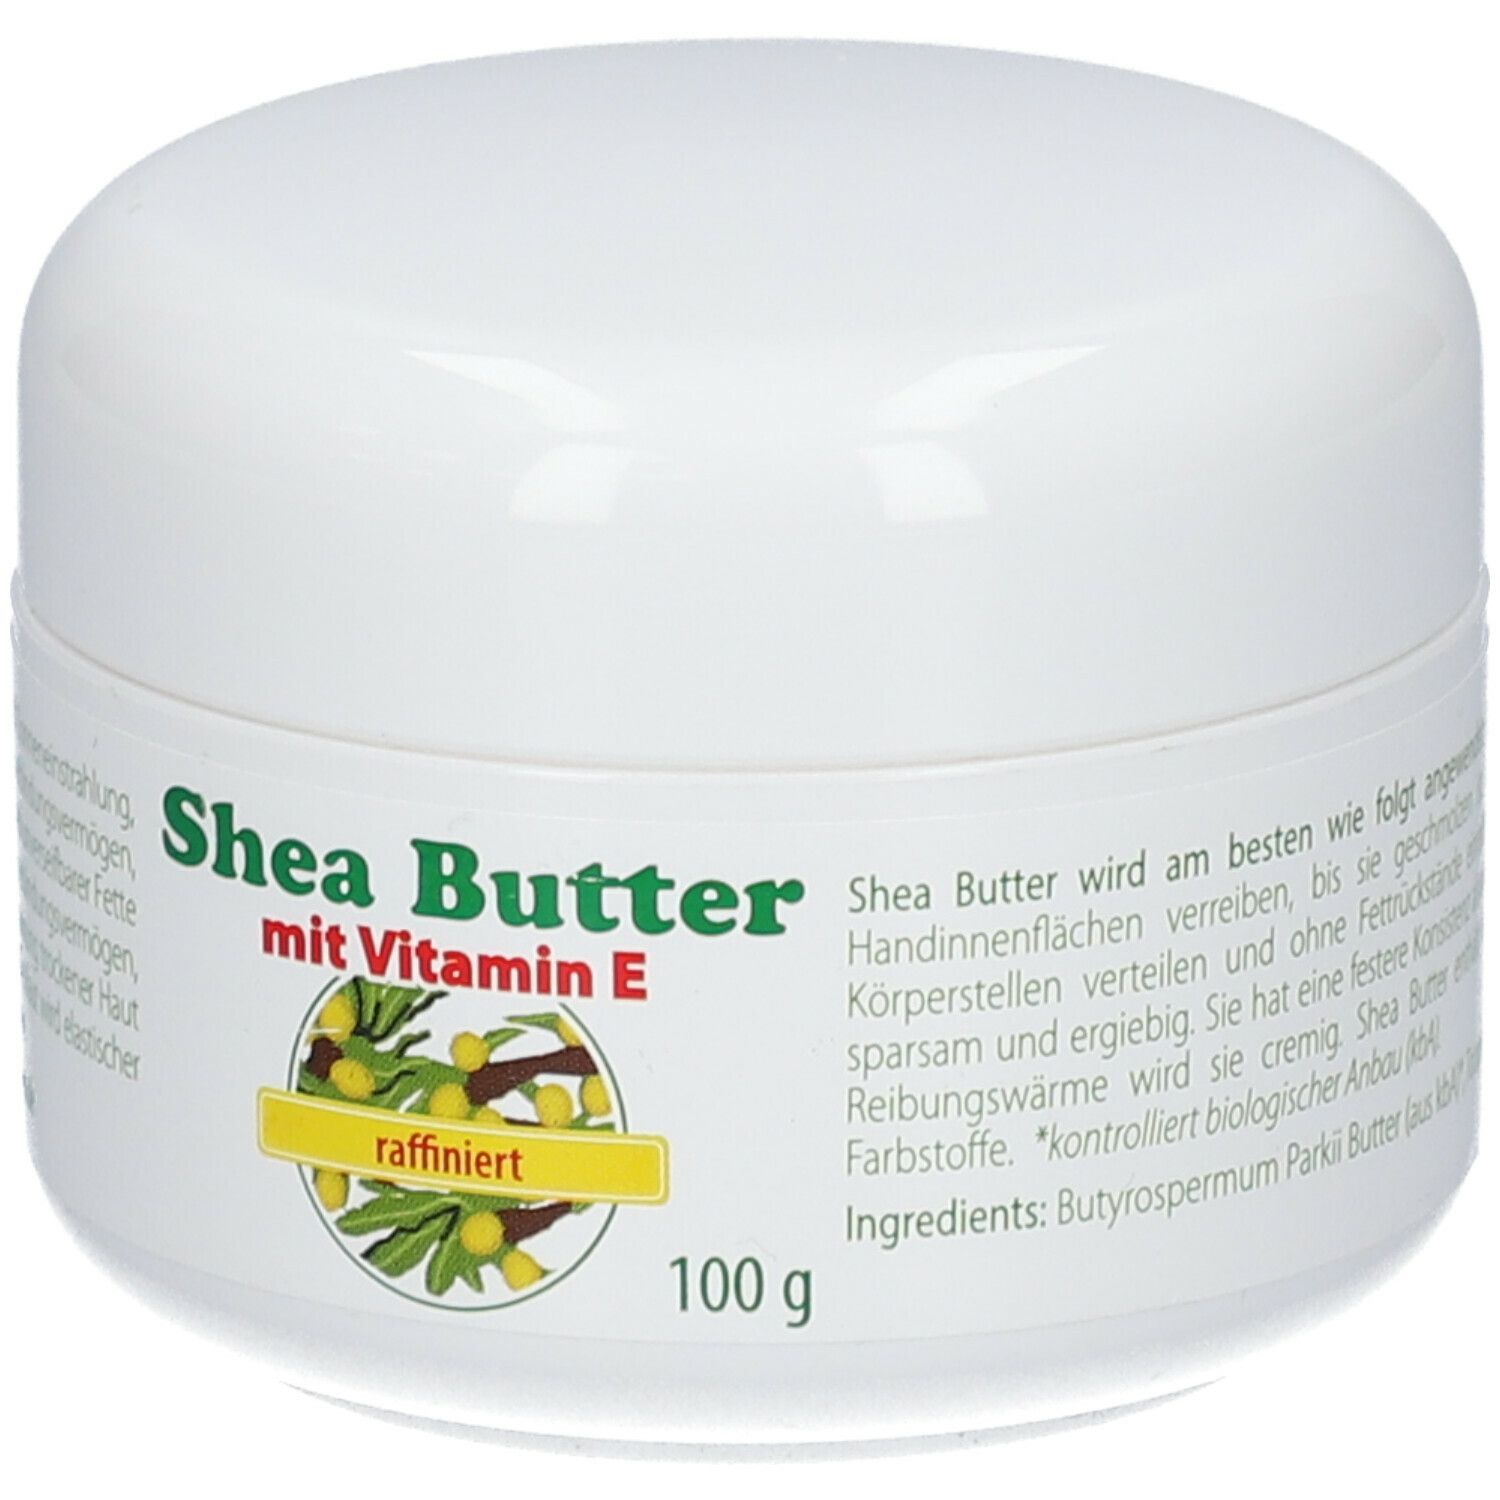 Shea Butter mit Vitamin E